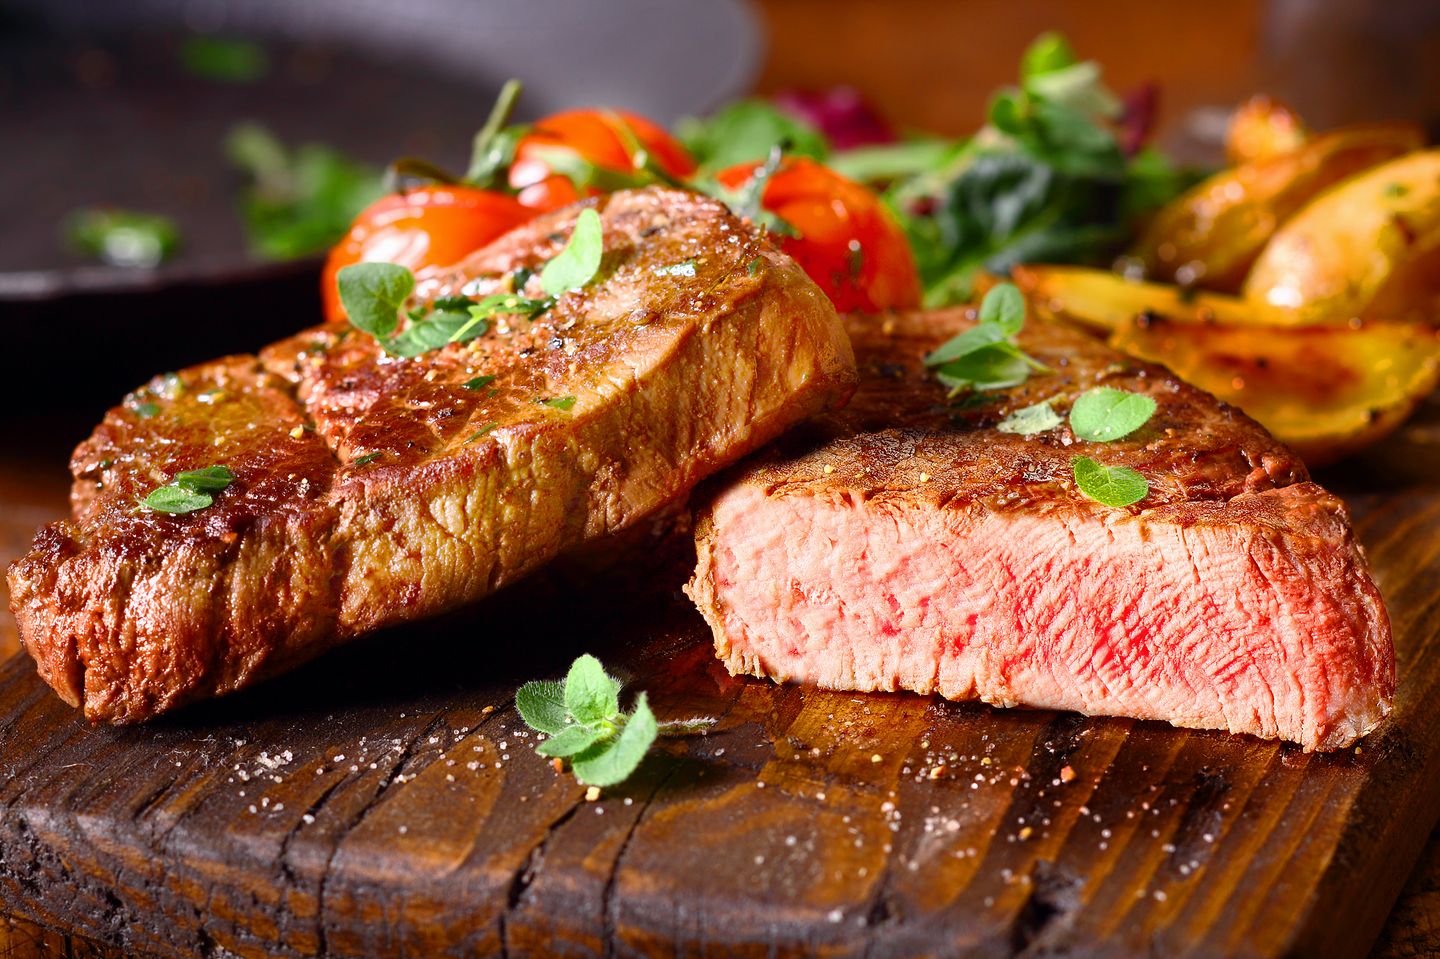 Schnelle Fettverbrenner: Ein aufgeschnittenes Steak, garniert mit Kräutern und Tomate